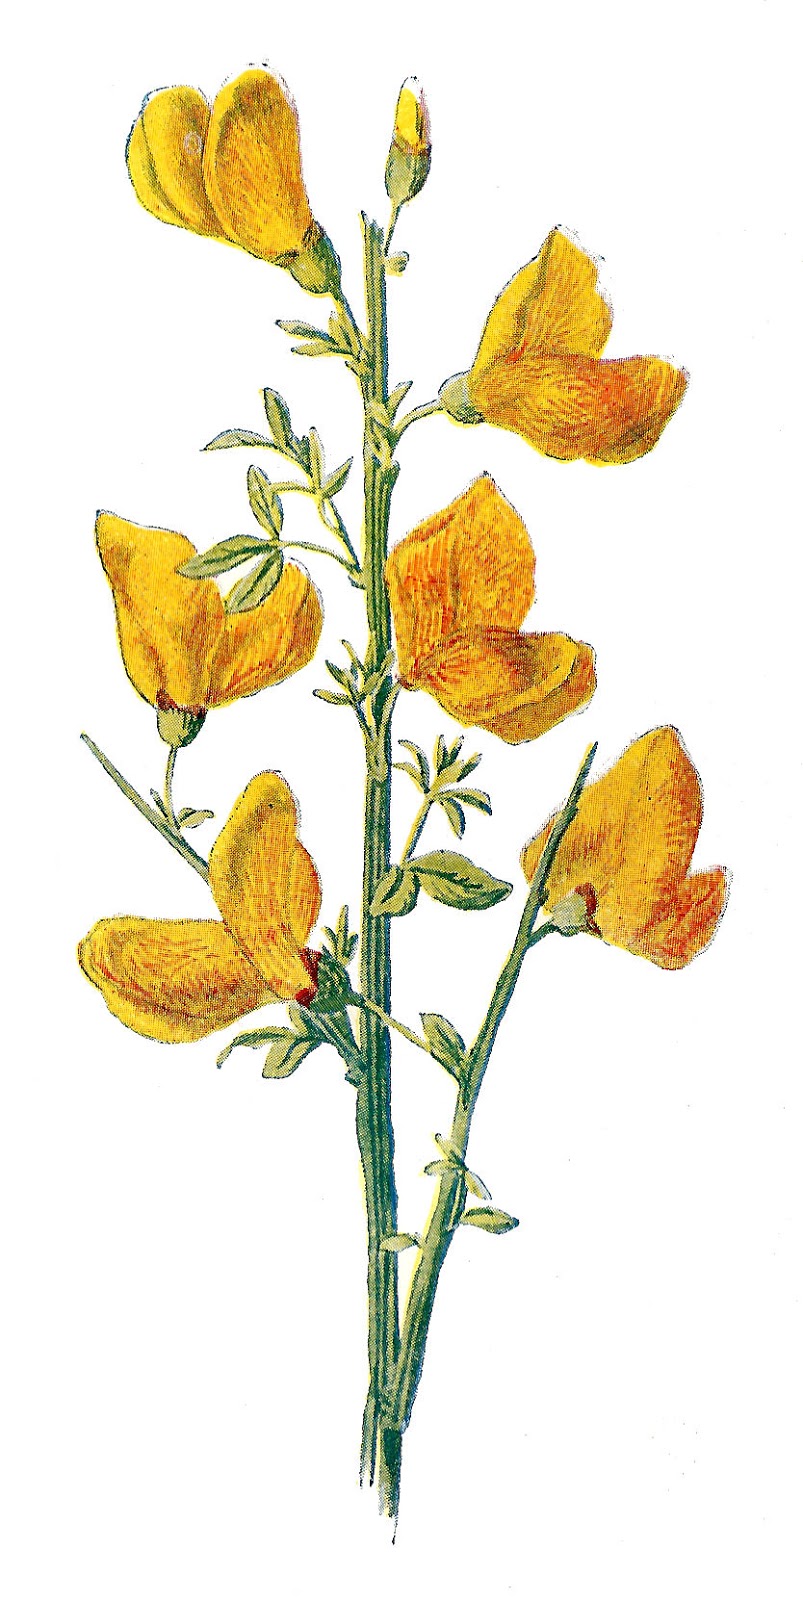 Free Wild Flower Clip Art  2 Flower Illustrations Of Common Rock Rose